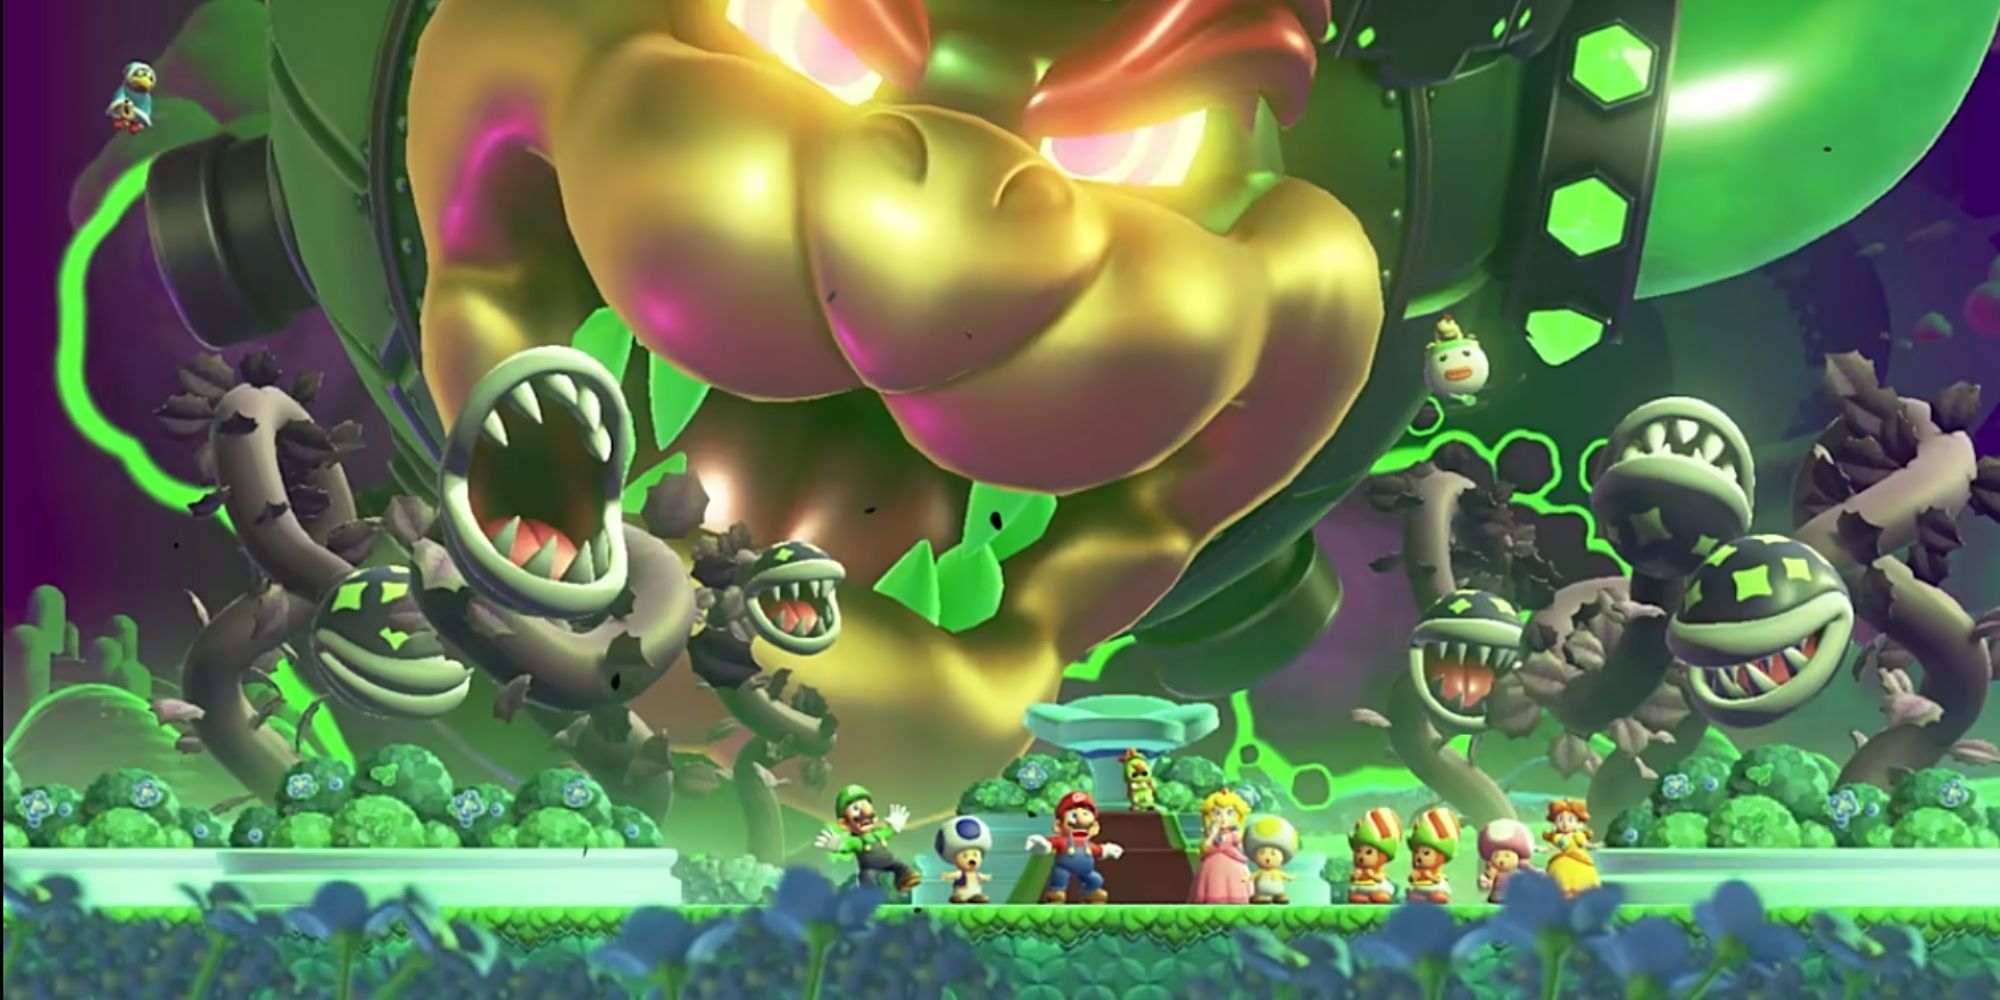 Super Mario Bros-Charaktere sehen überrascht aus, während im Hintergrund böse Feinde auftauchen